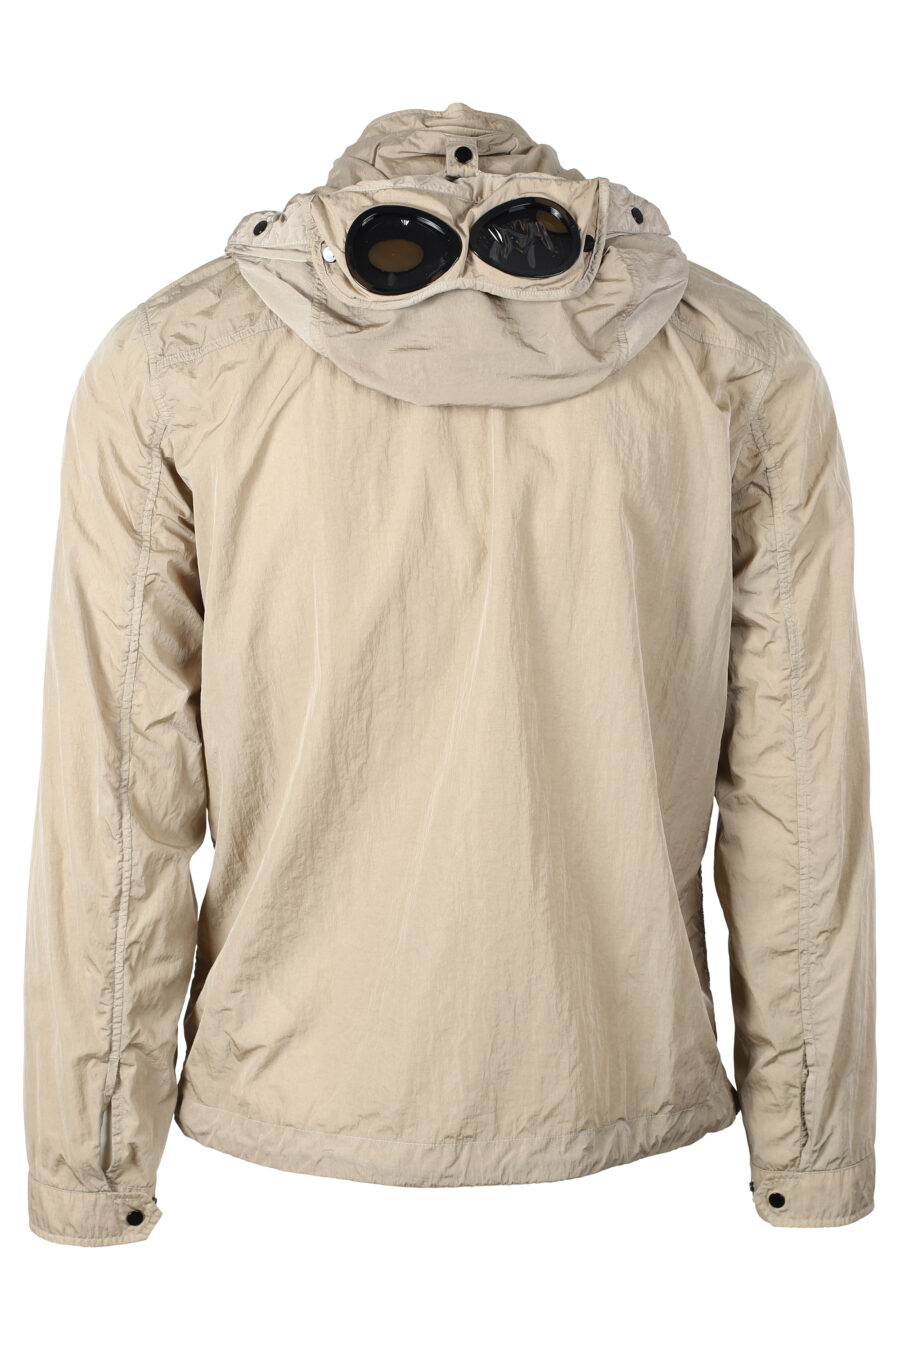 Veste beige avec capuche à lunettes réglable - IMG 4647